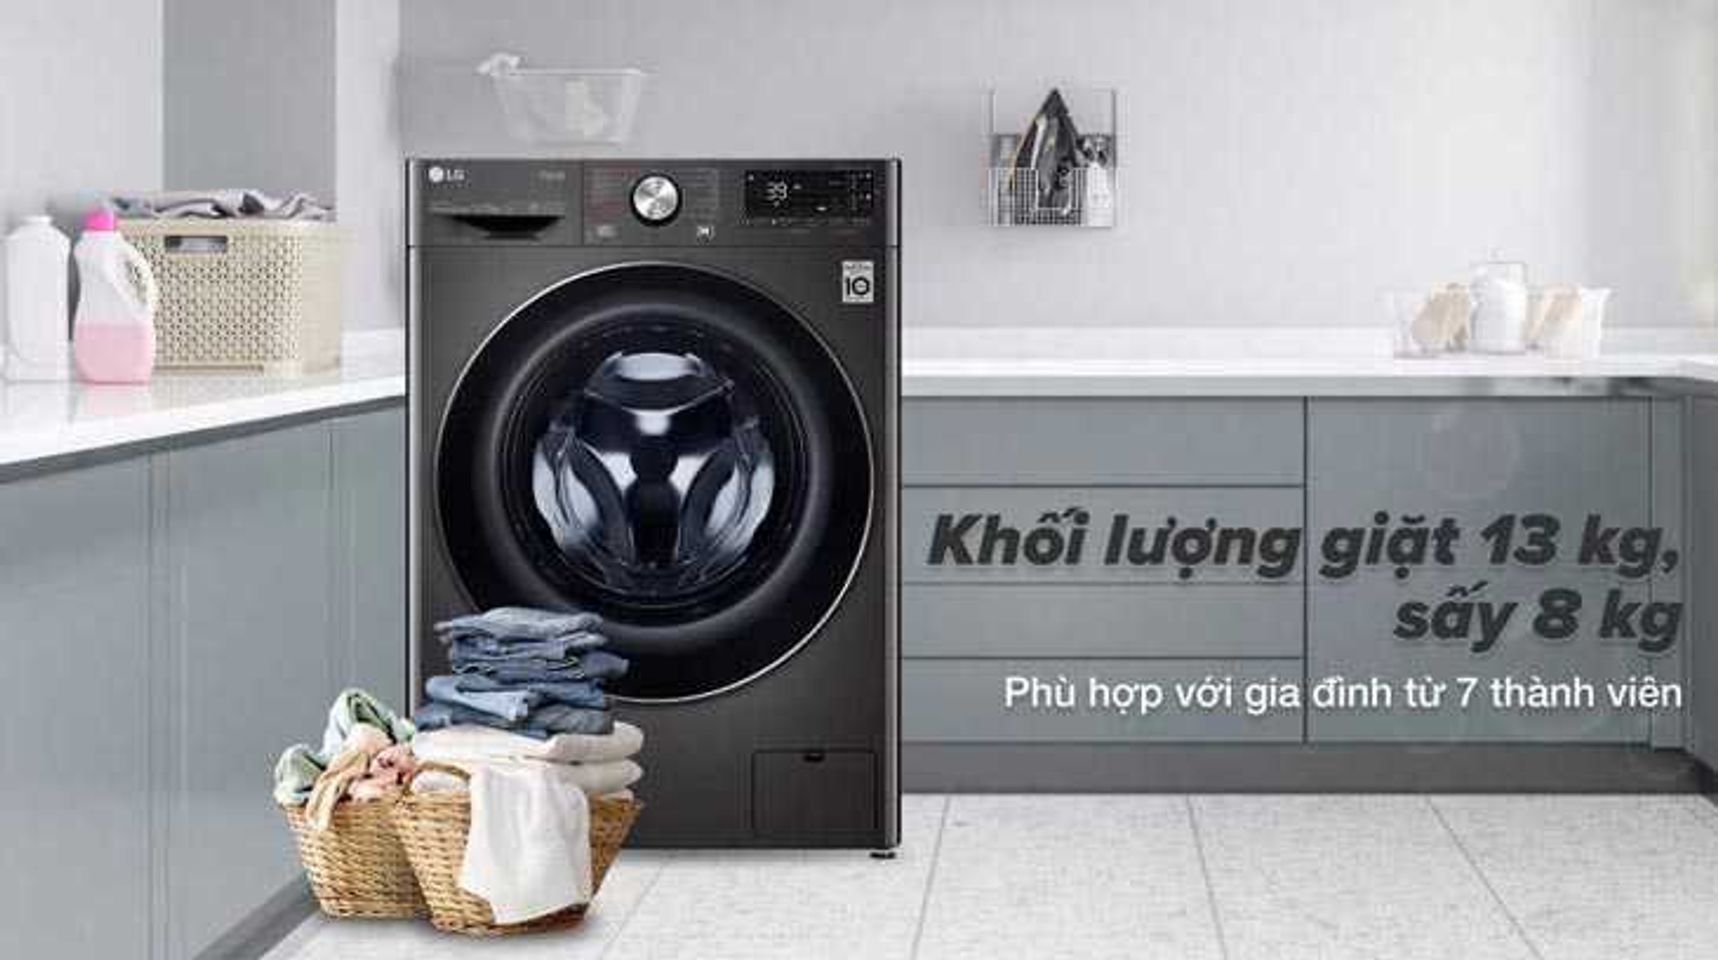 Máy giặt sấy LG FV1413H3BA inverter giặt 13 kg sấy 8kg 2